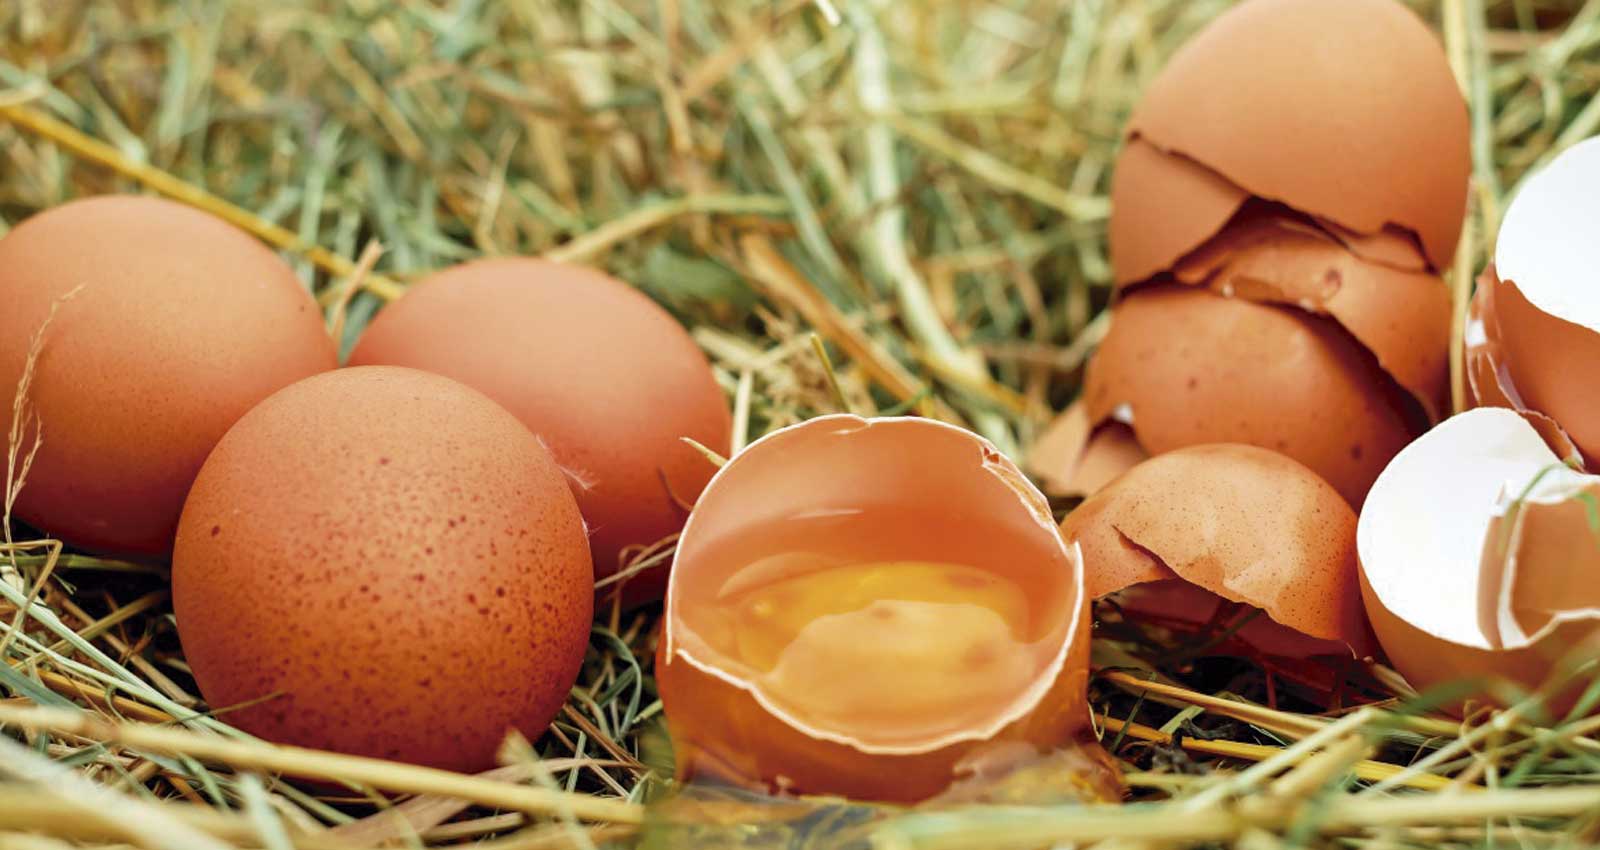 La mejor manera de conservar los huevos frescos y que sea seguro